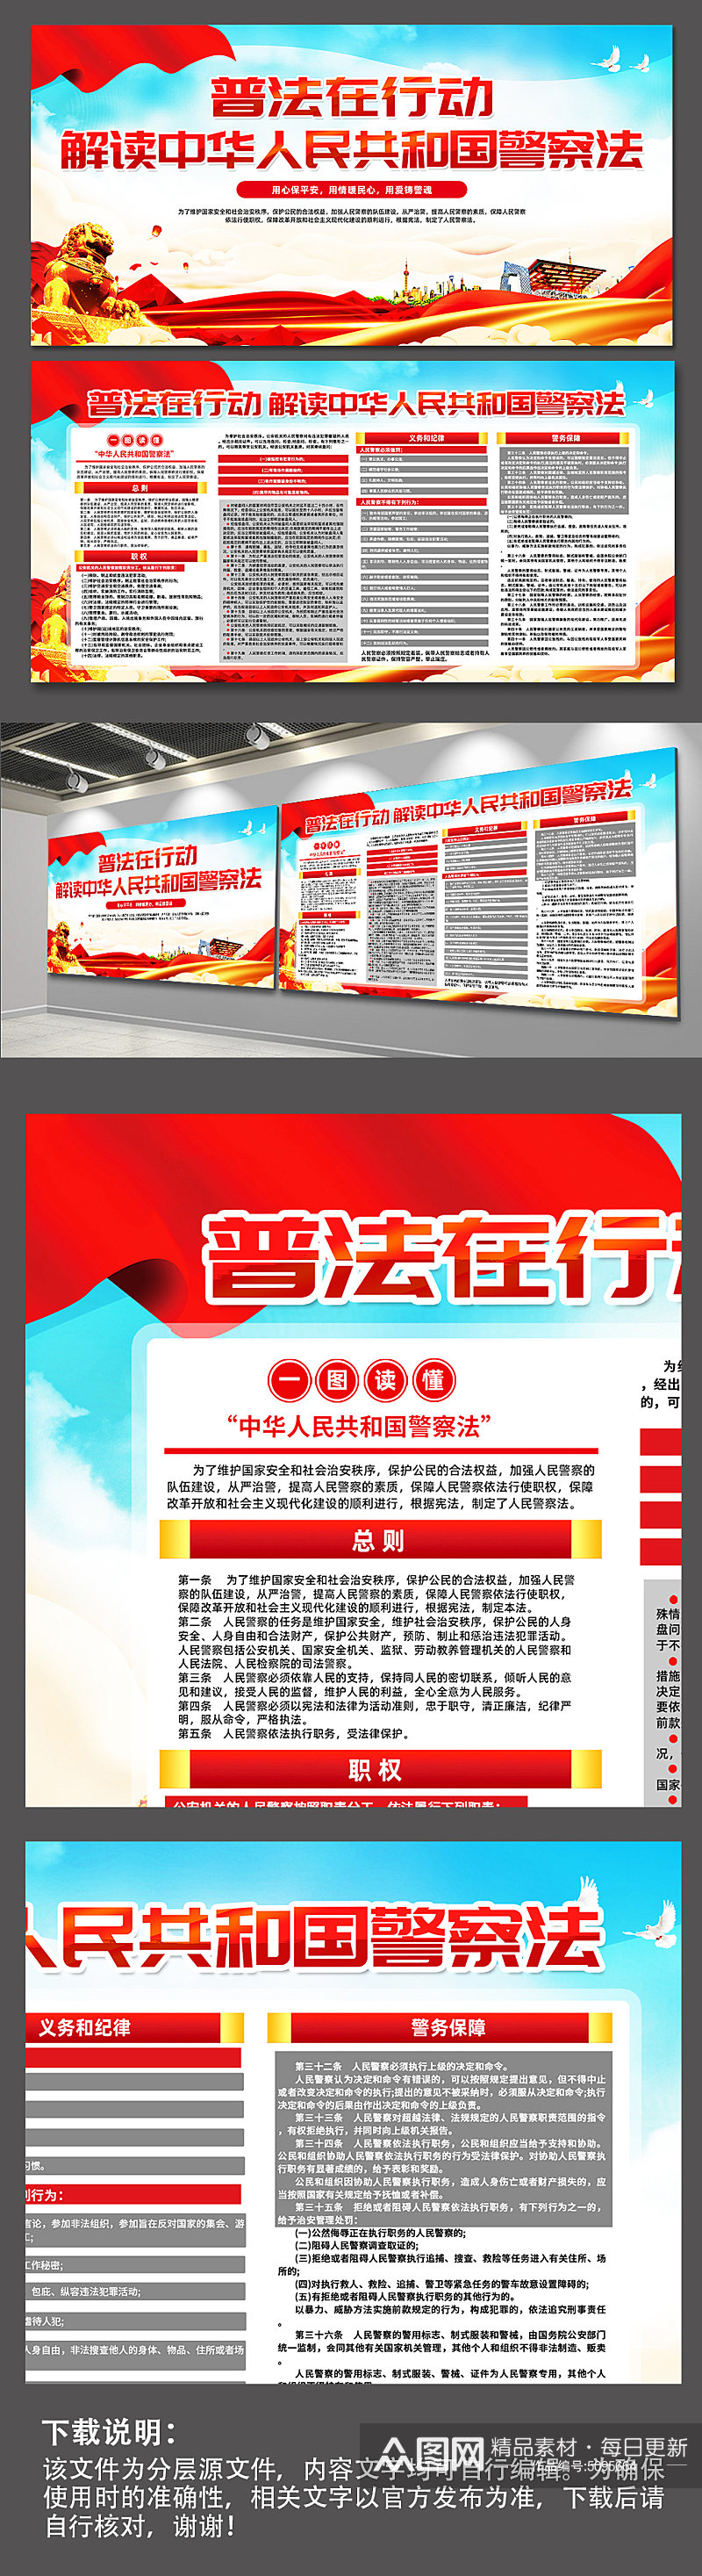 红色中华人民共和国人民警察法党建展板素材